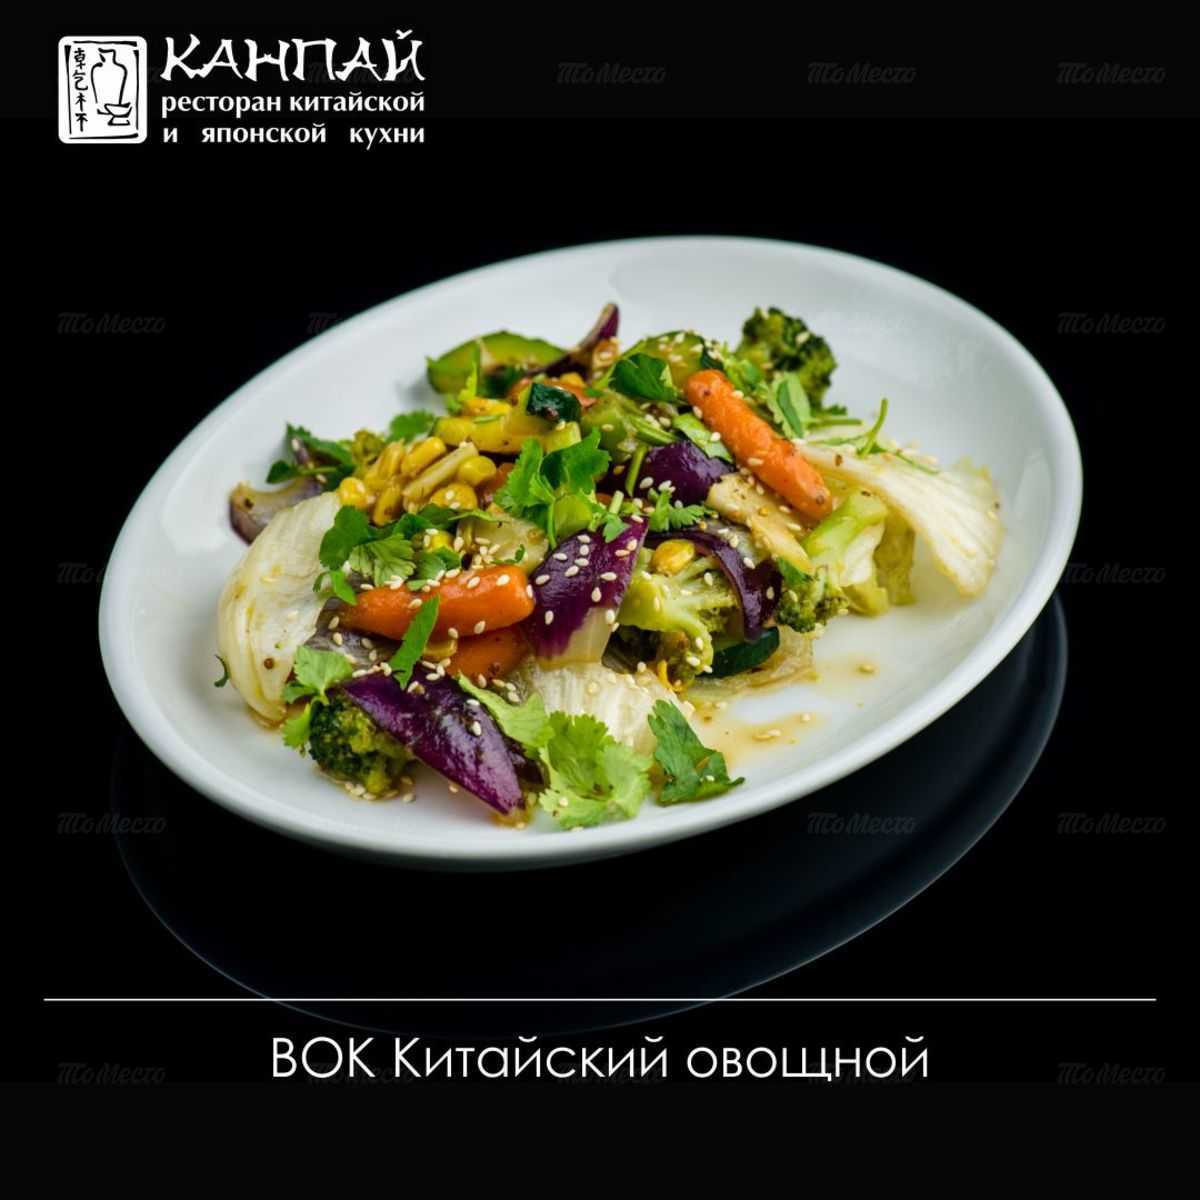 Меню и цены ресторана Канпай на Оренбургском тракте фото 44